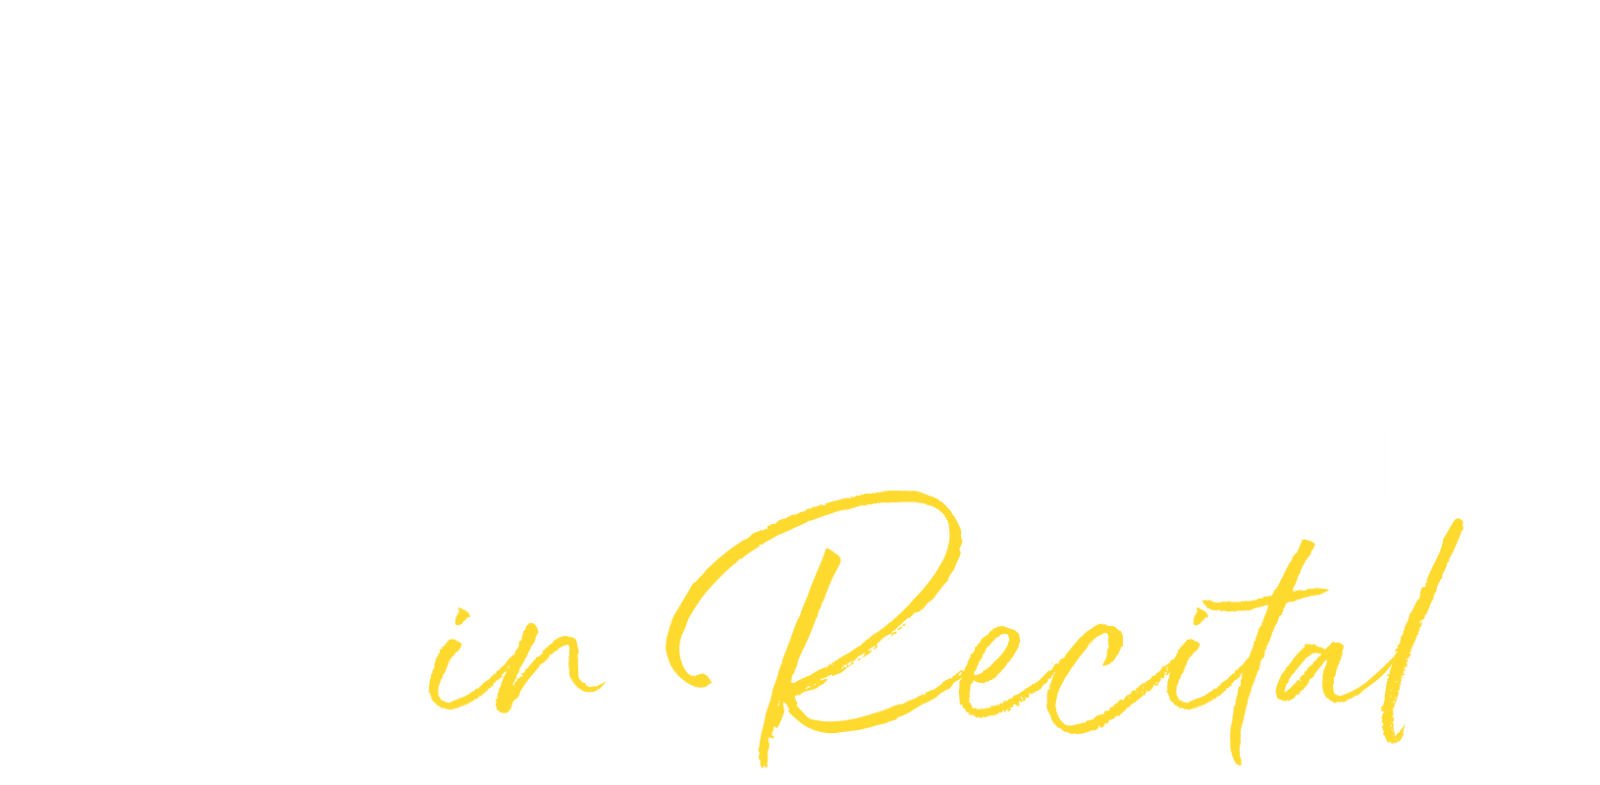 Artwork for Renée Fleming in Recital